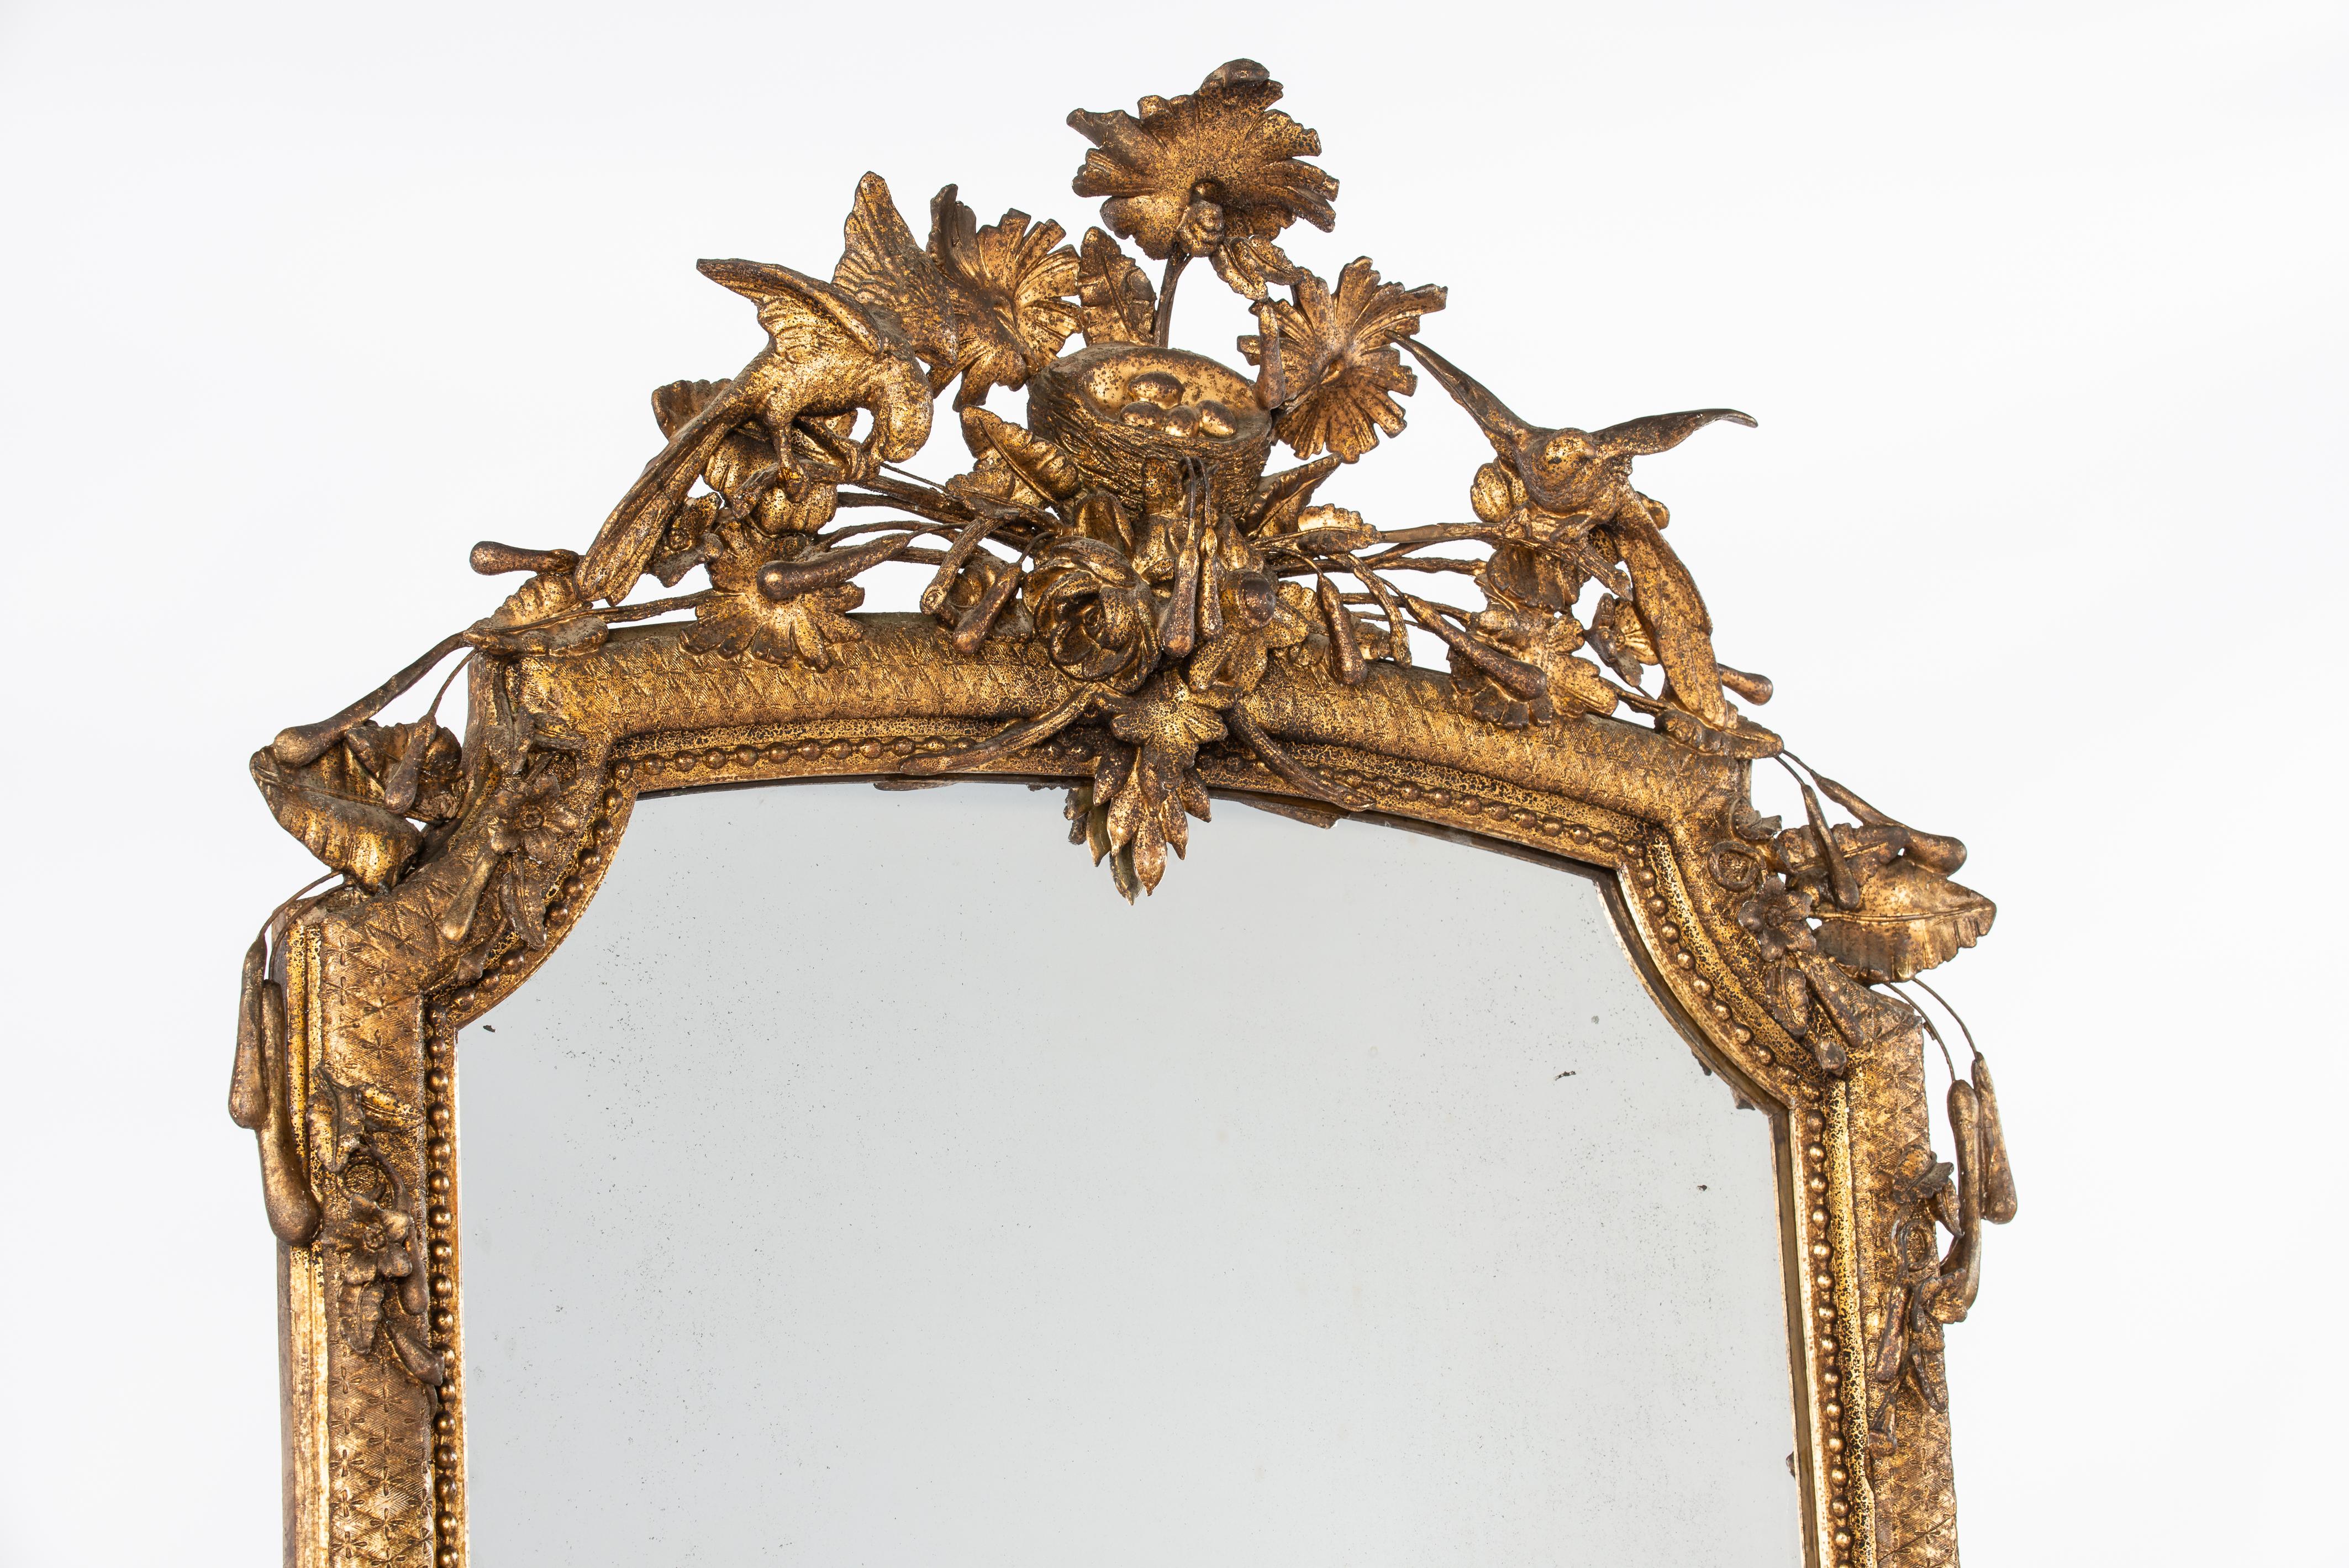 Nous vous proposons ici un superbe et rare miroir à pied haut, fabriqué dans le sud de la France au milieu du XIXe siècle, vers 1850. Le cadre du miroir est somptueusement orné de nombreux ornements naturels tels que des fleurs, des feuilles et des